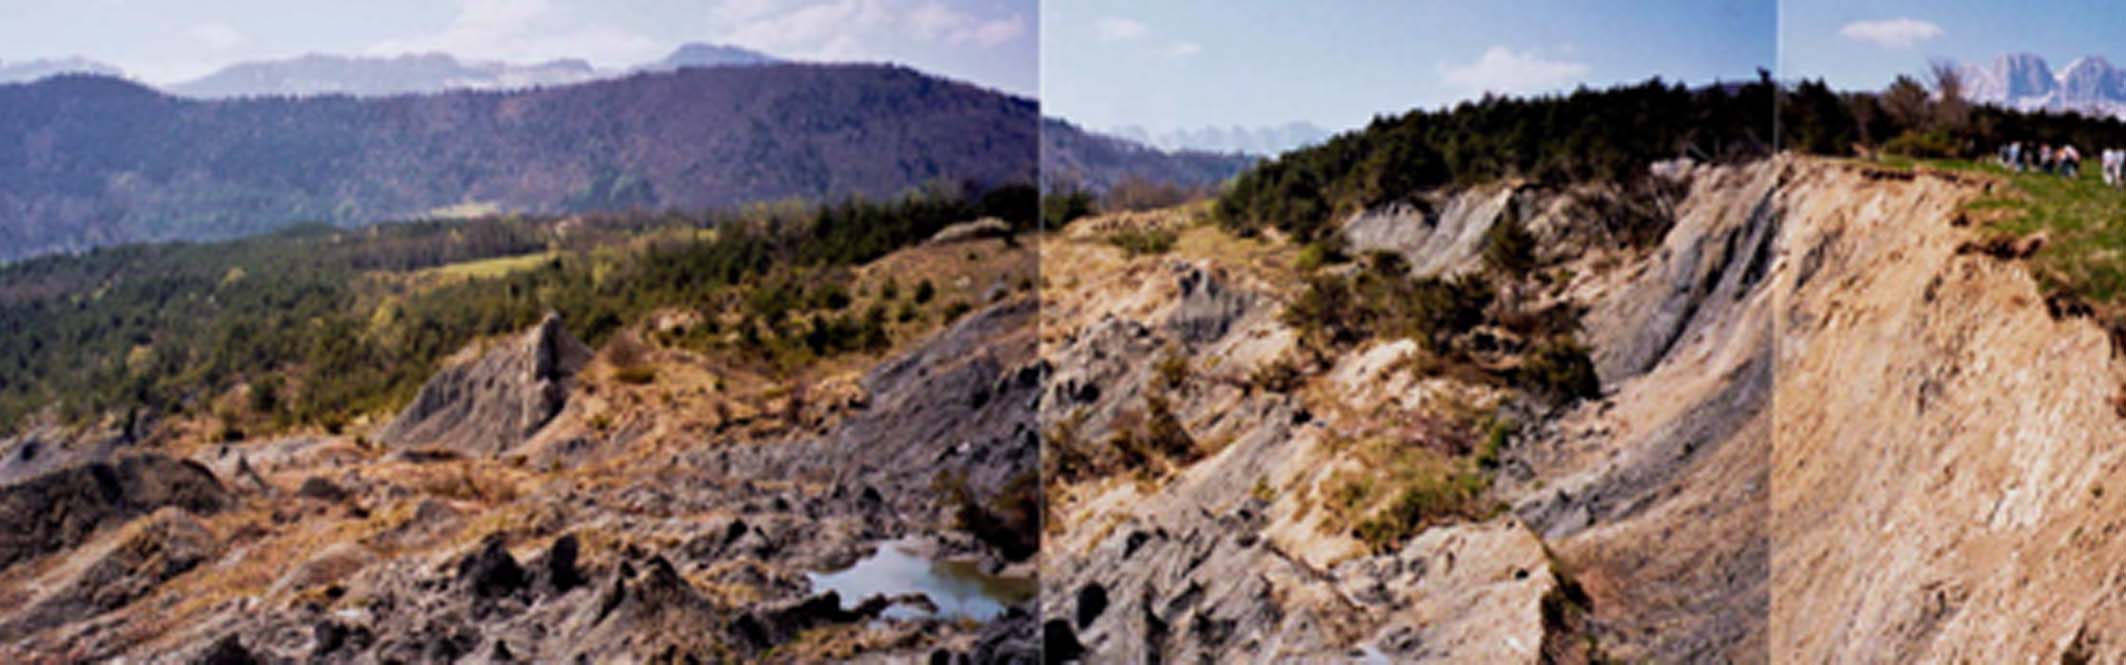 Avignonet/Harmalière landslides: main scarp in 1995